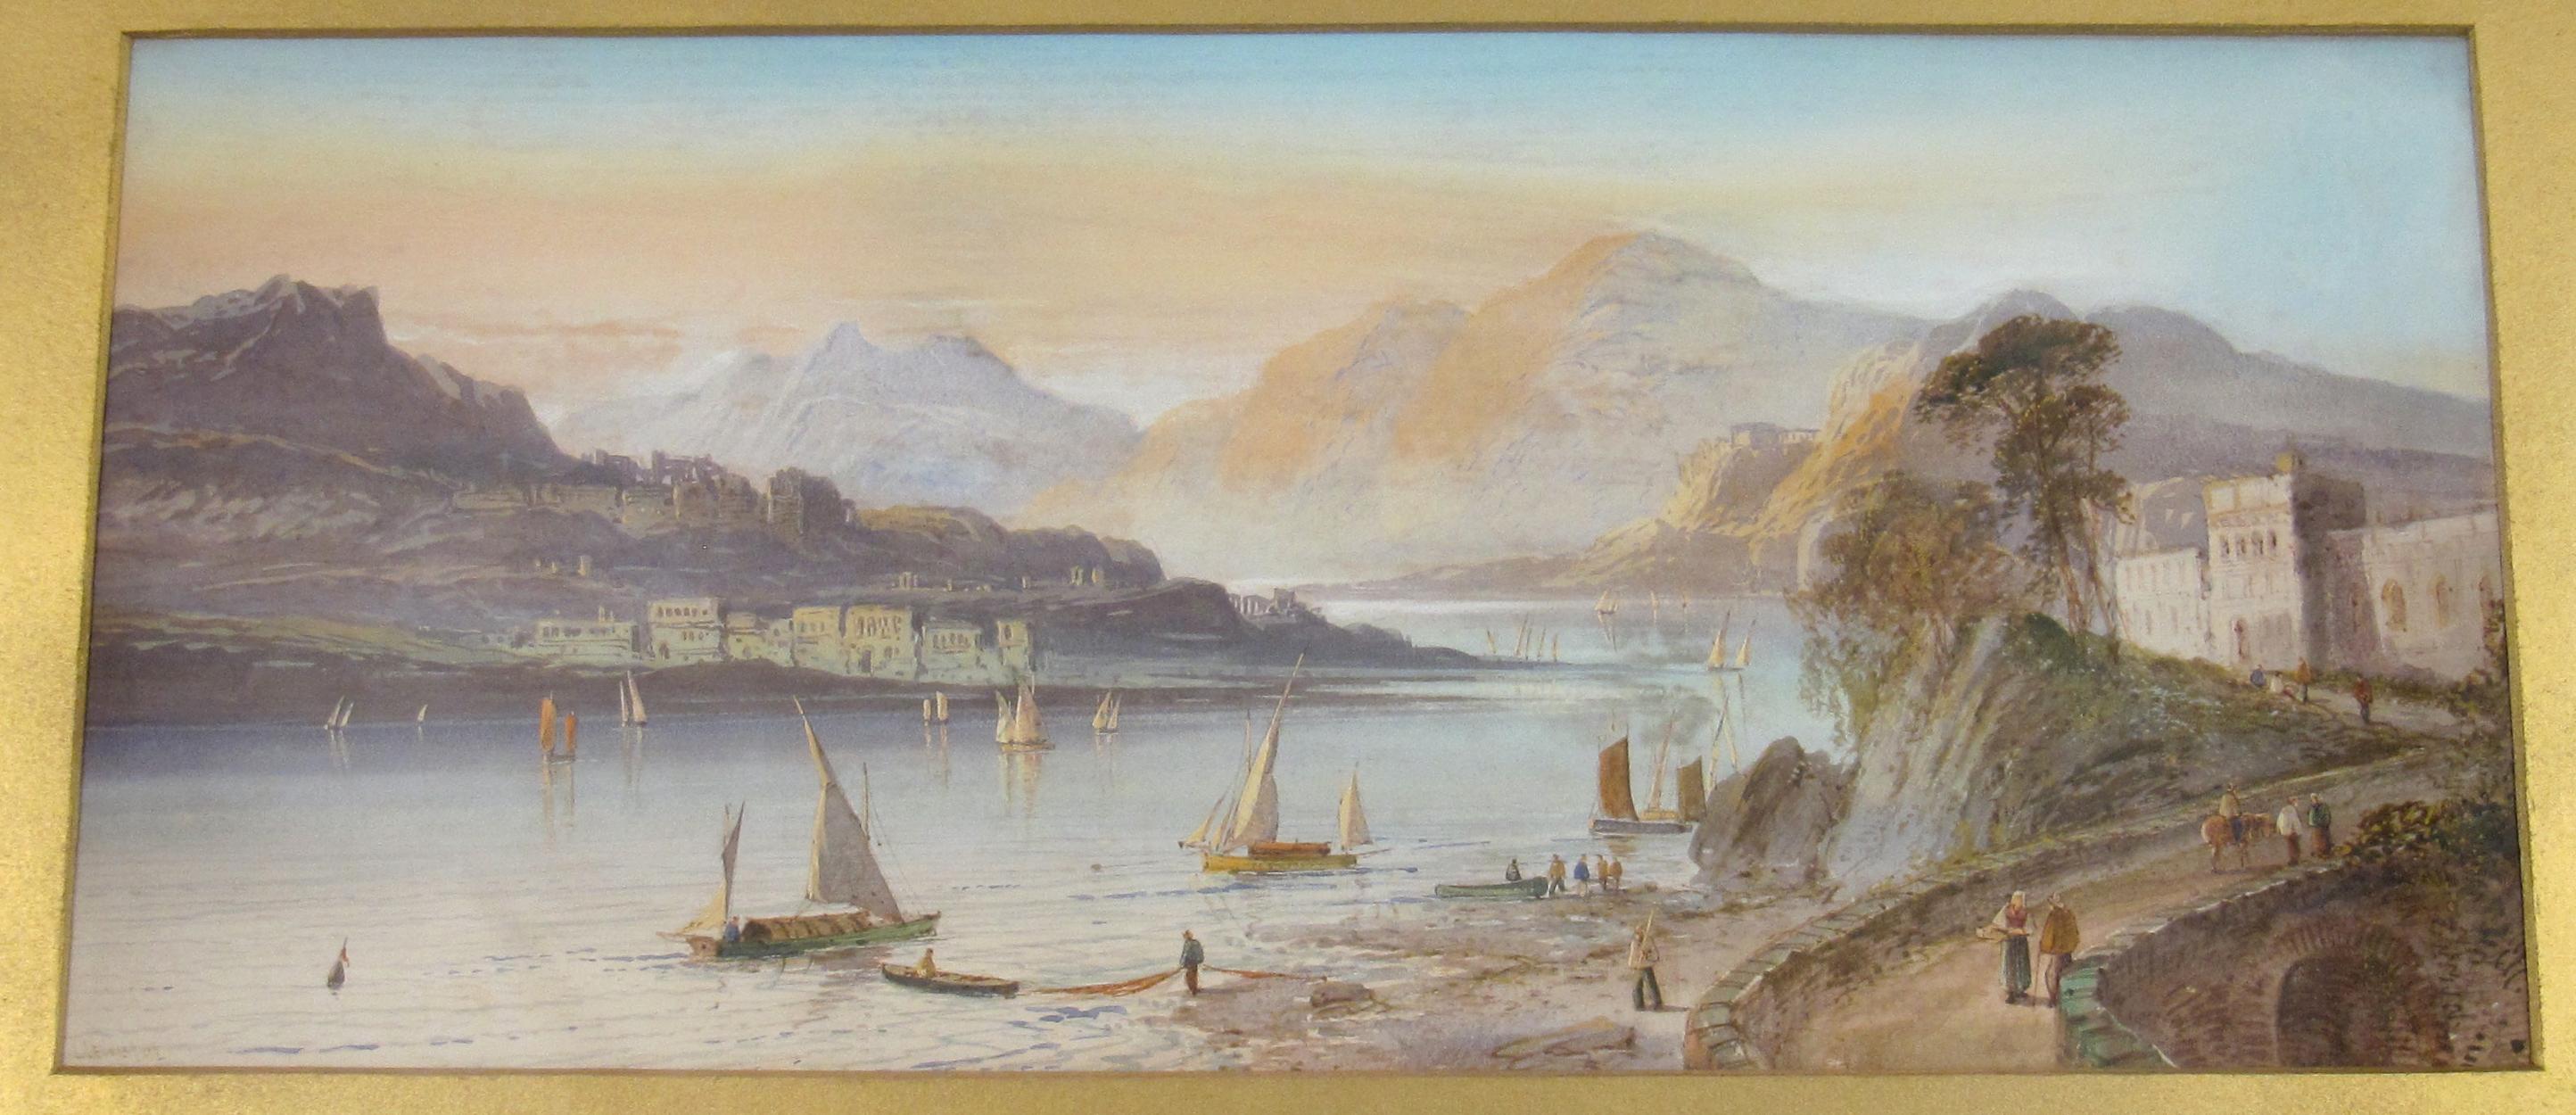 Lennard Lewis
(Britannique, 1826 - 1913)

Vue sur le Lago Maggiore et les montagnes du sud de la Suisse

•	Aquarelle sur papier
•	Signé et daté en bas à gauche
•	Image visible, environ 23,5 x 54 cm
•	Un peu plus tard, cadre en chêne glacé, env. 37 x